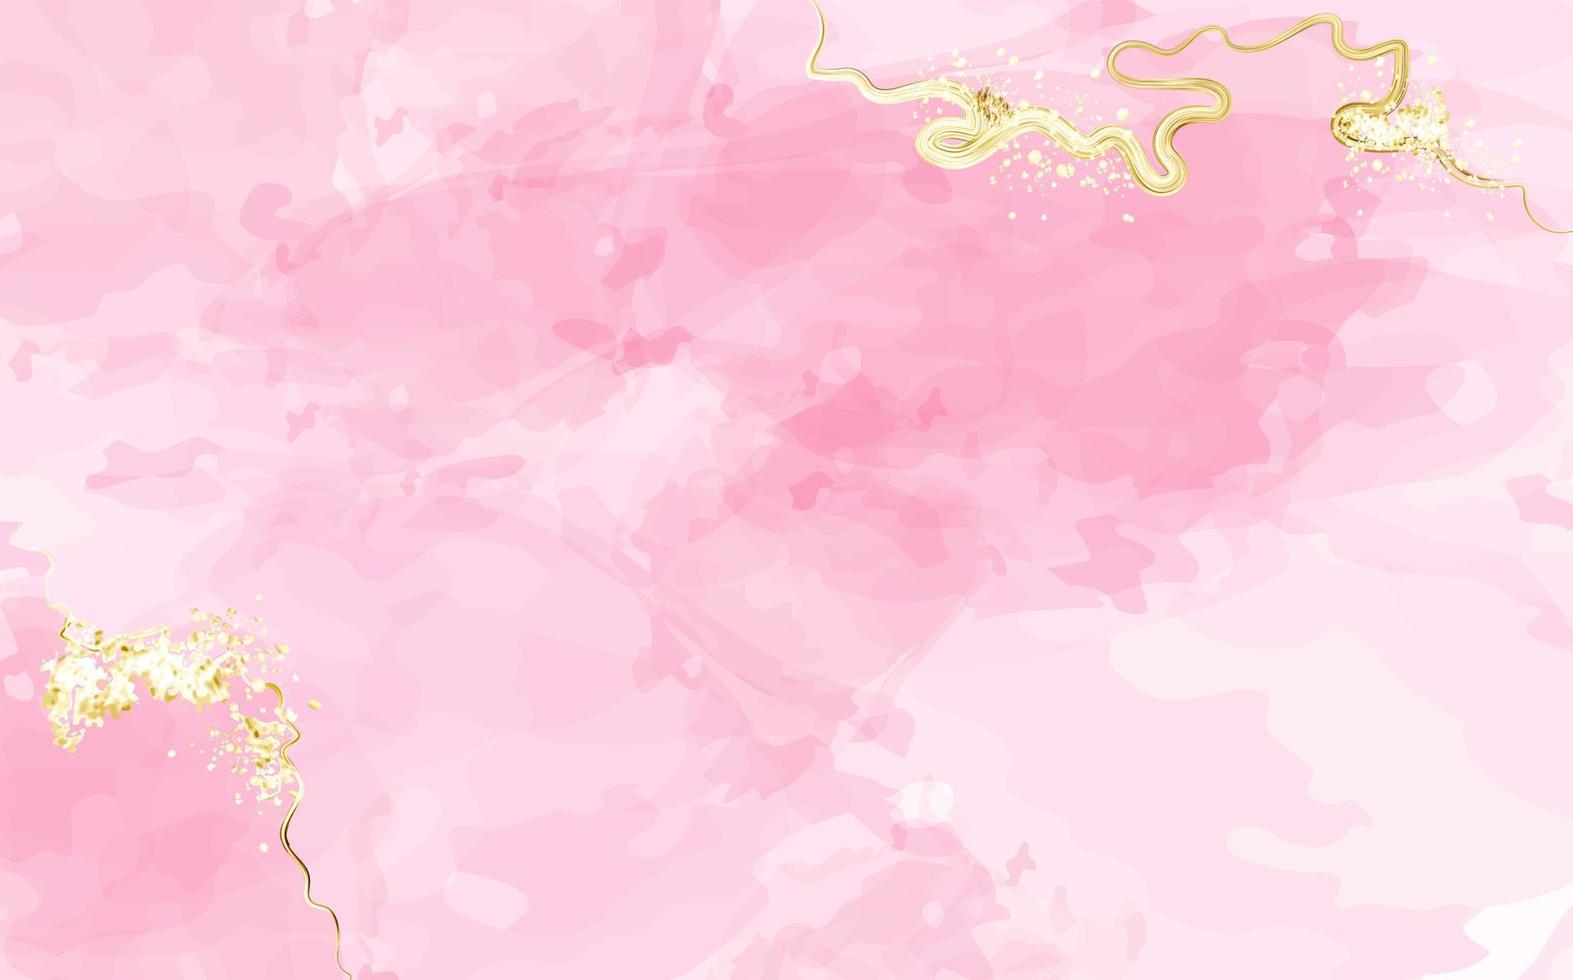 abstracte roze of abrikoos aquarel achtergrond met gouden texture.blush vloeistof schilderij. lente bruiloft uitnodiging stoffige roos of sluier textuur. alcoholische inkt. vector